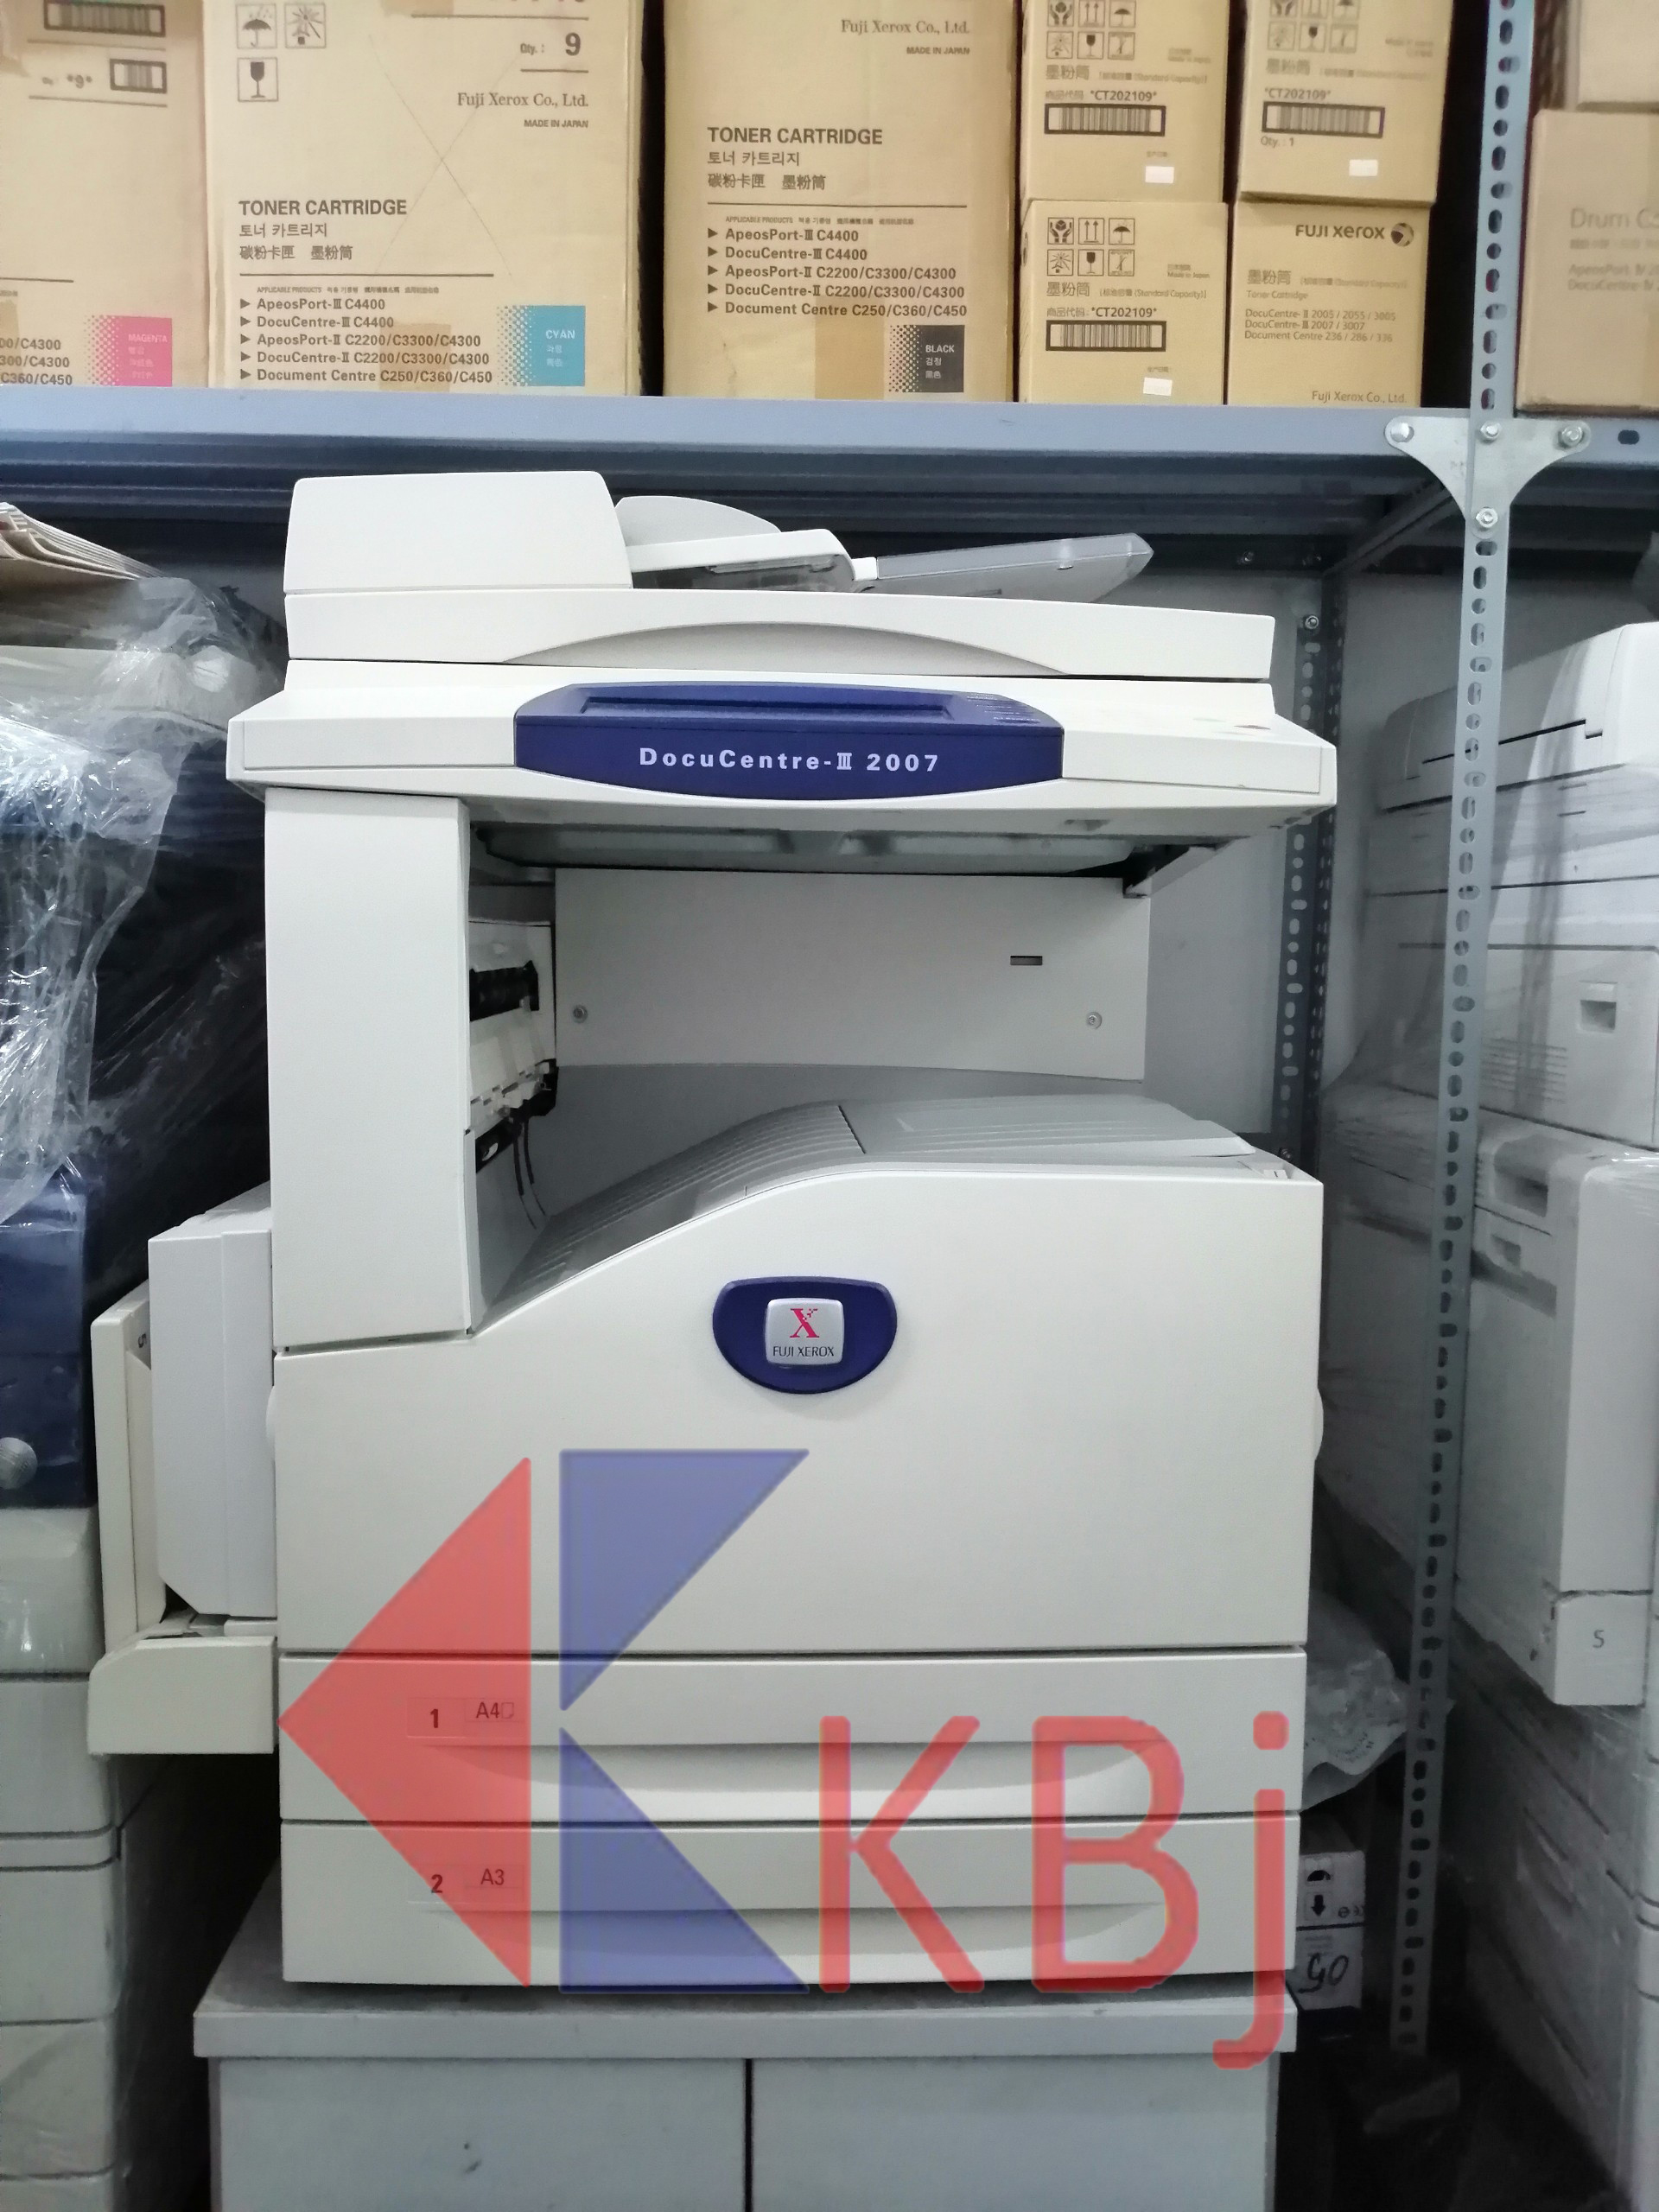 Fuji Xerox DocuCentre III-2007/3007